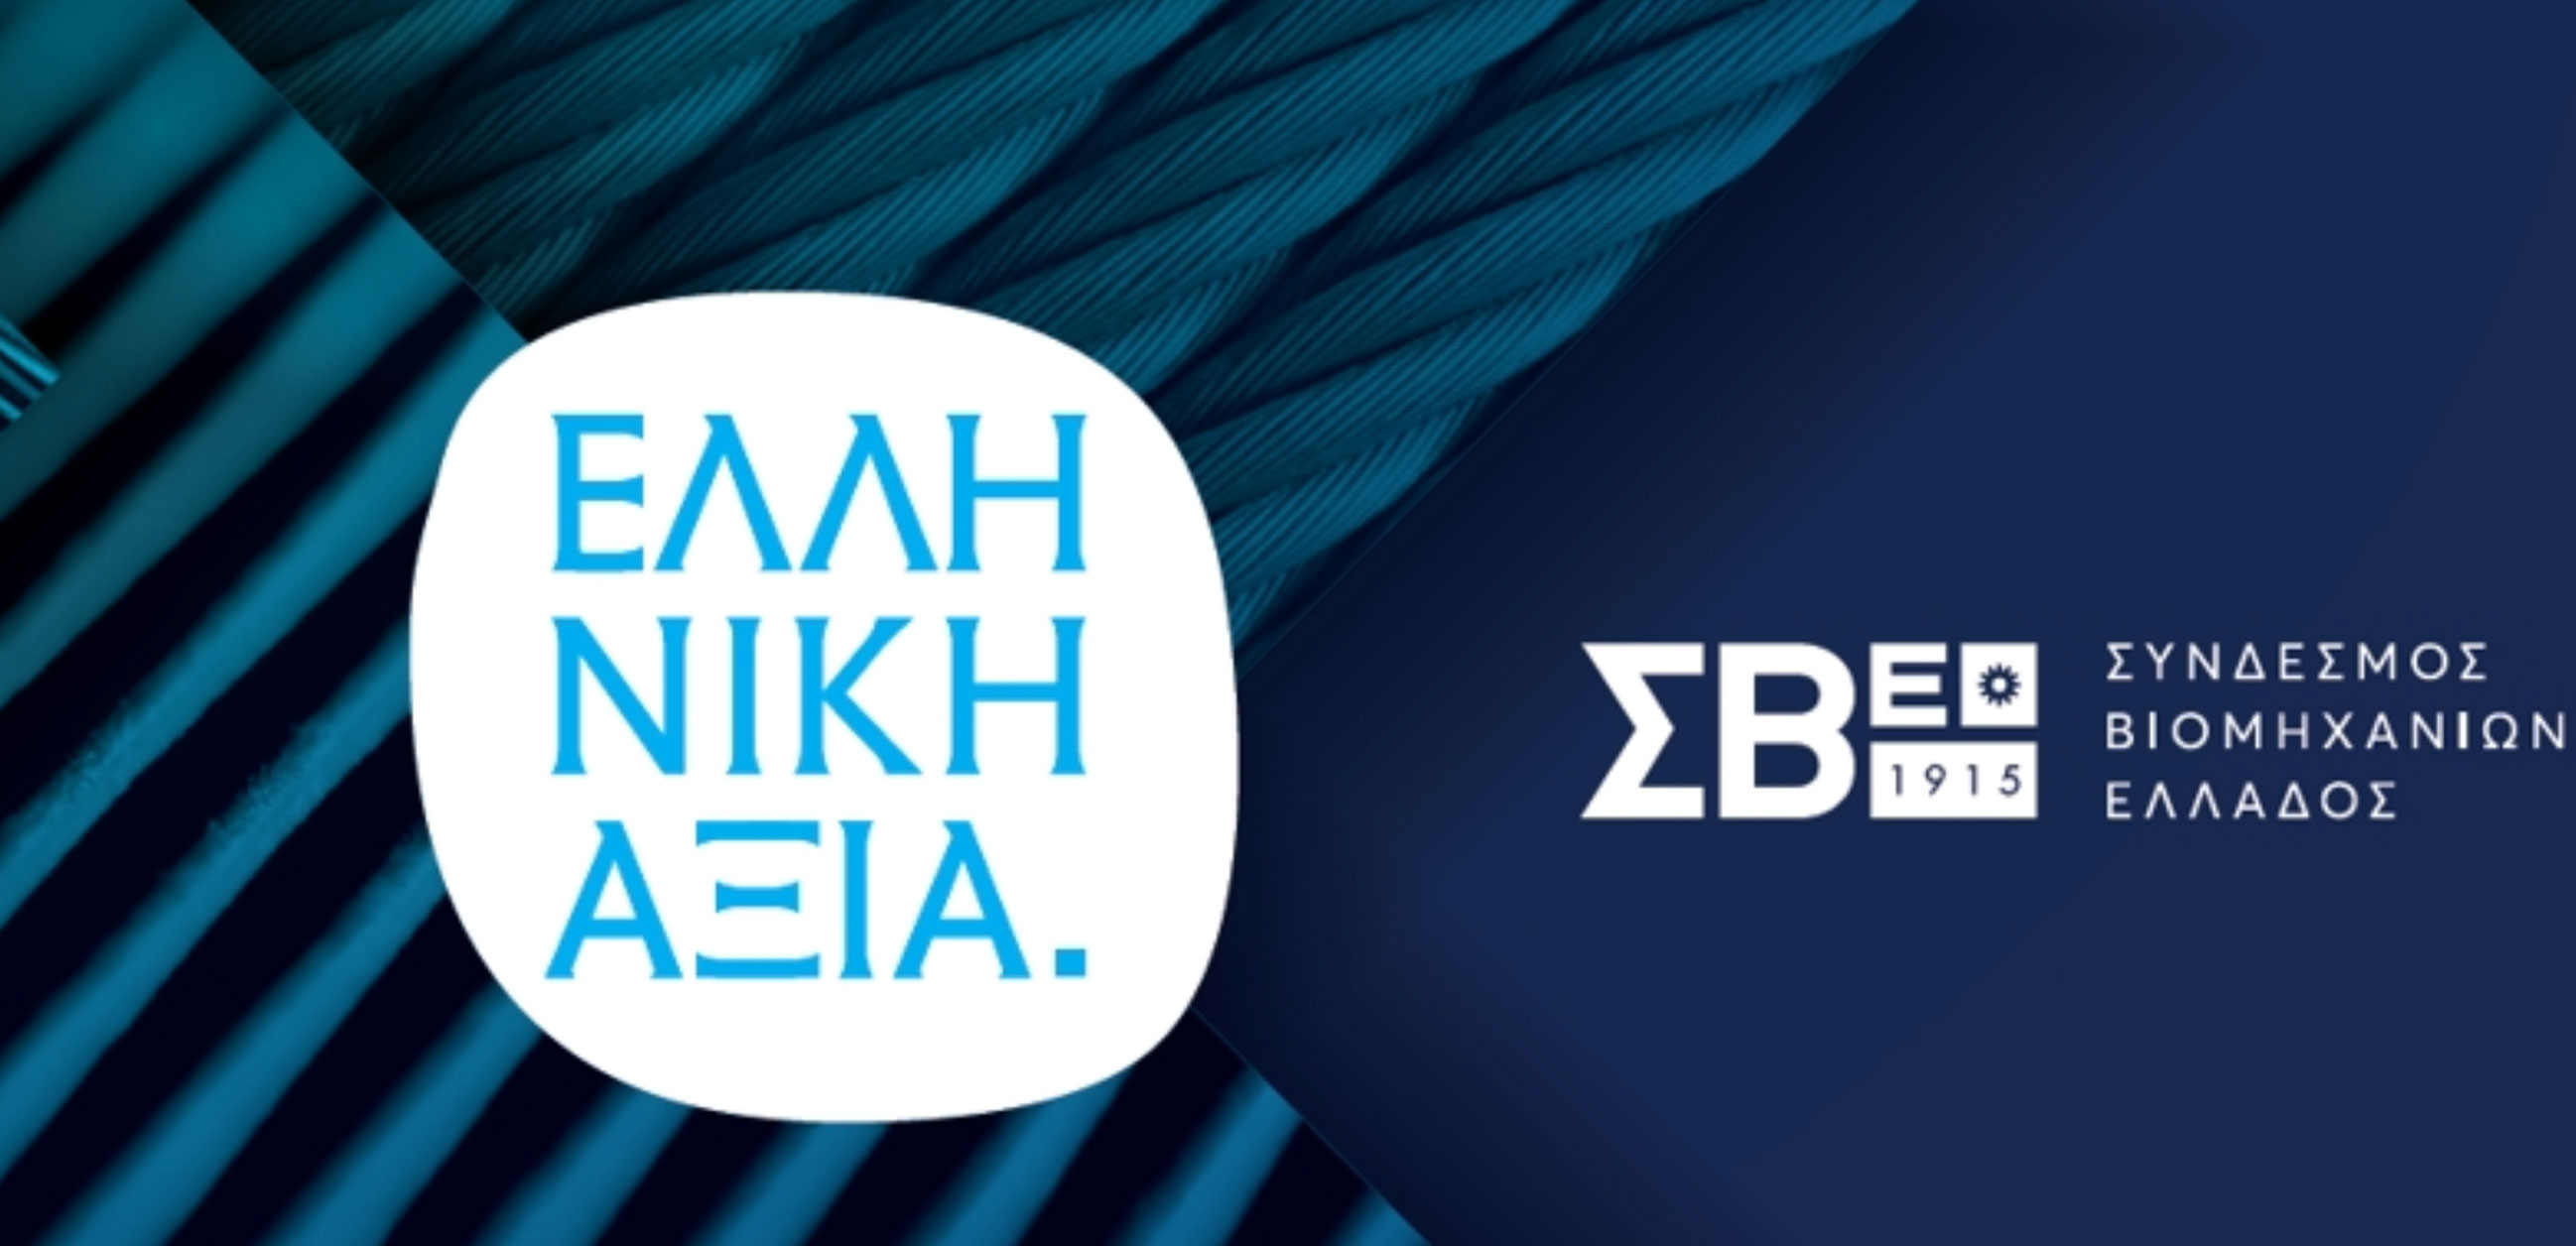 Βραβεία “Ελληνική Αξία”: Ο ΣΒΕ βράβευσε επιχειρήσεις που ξεχώρισαν